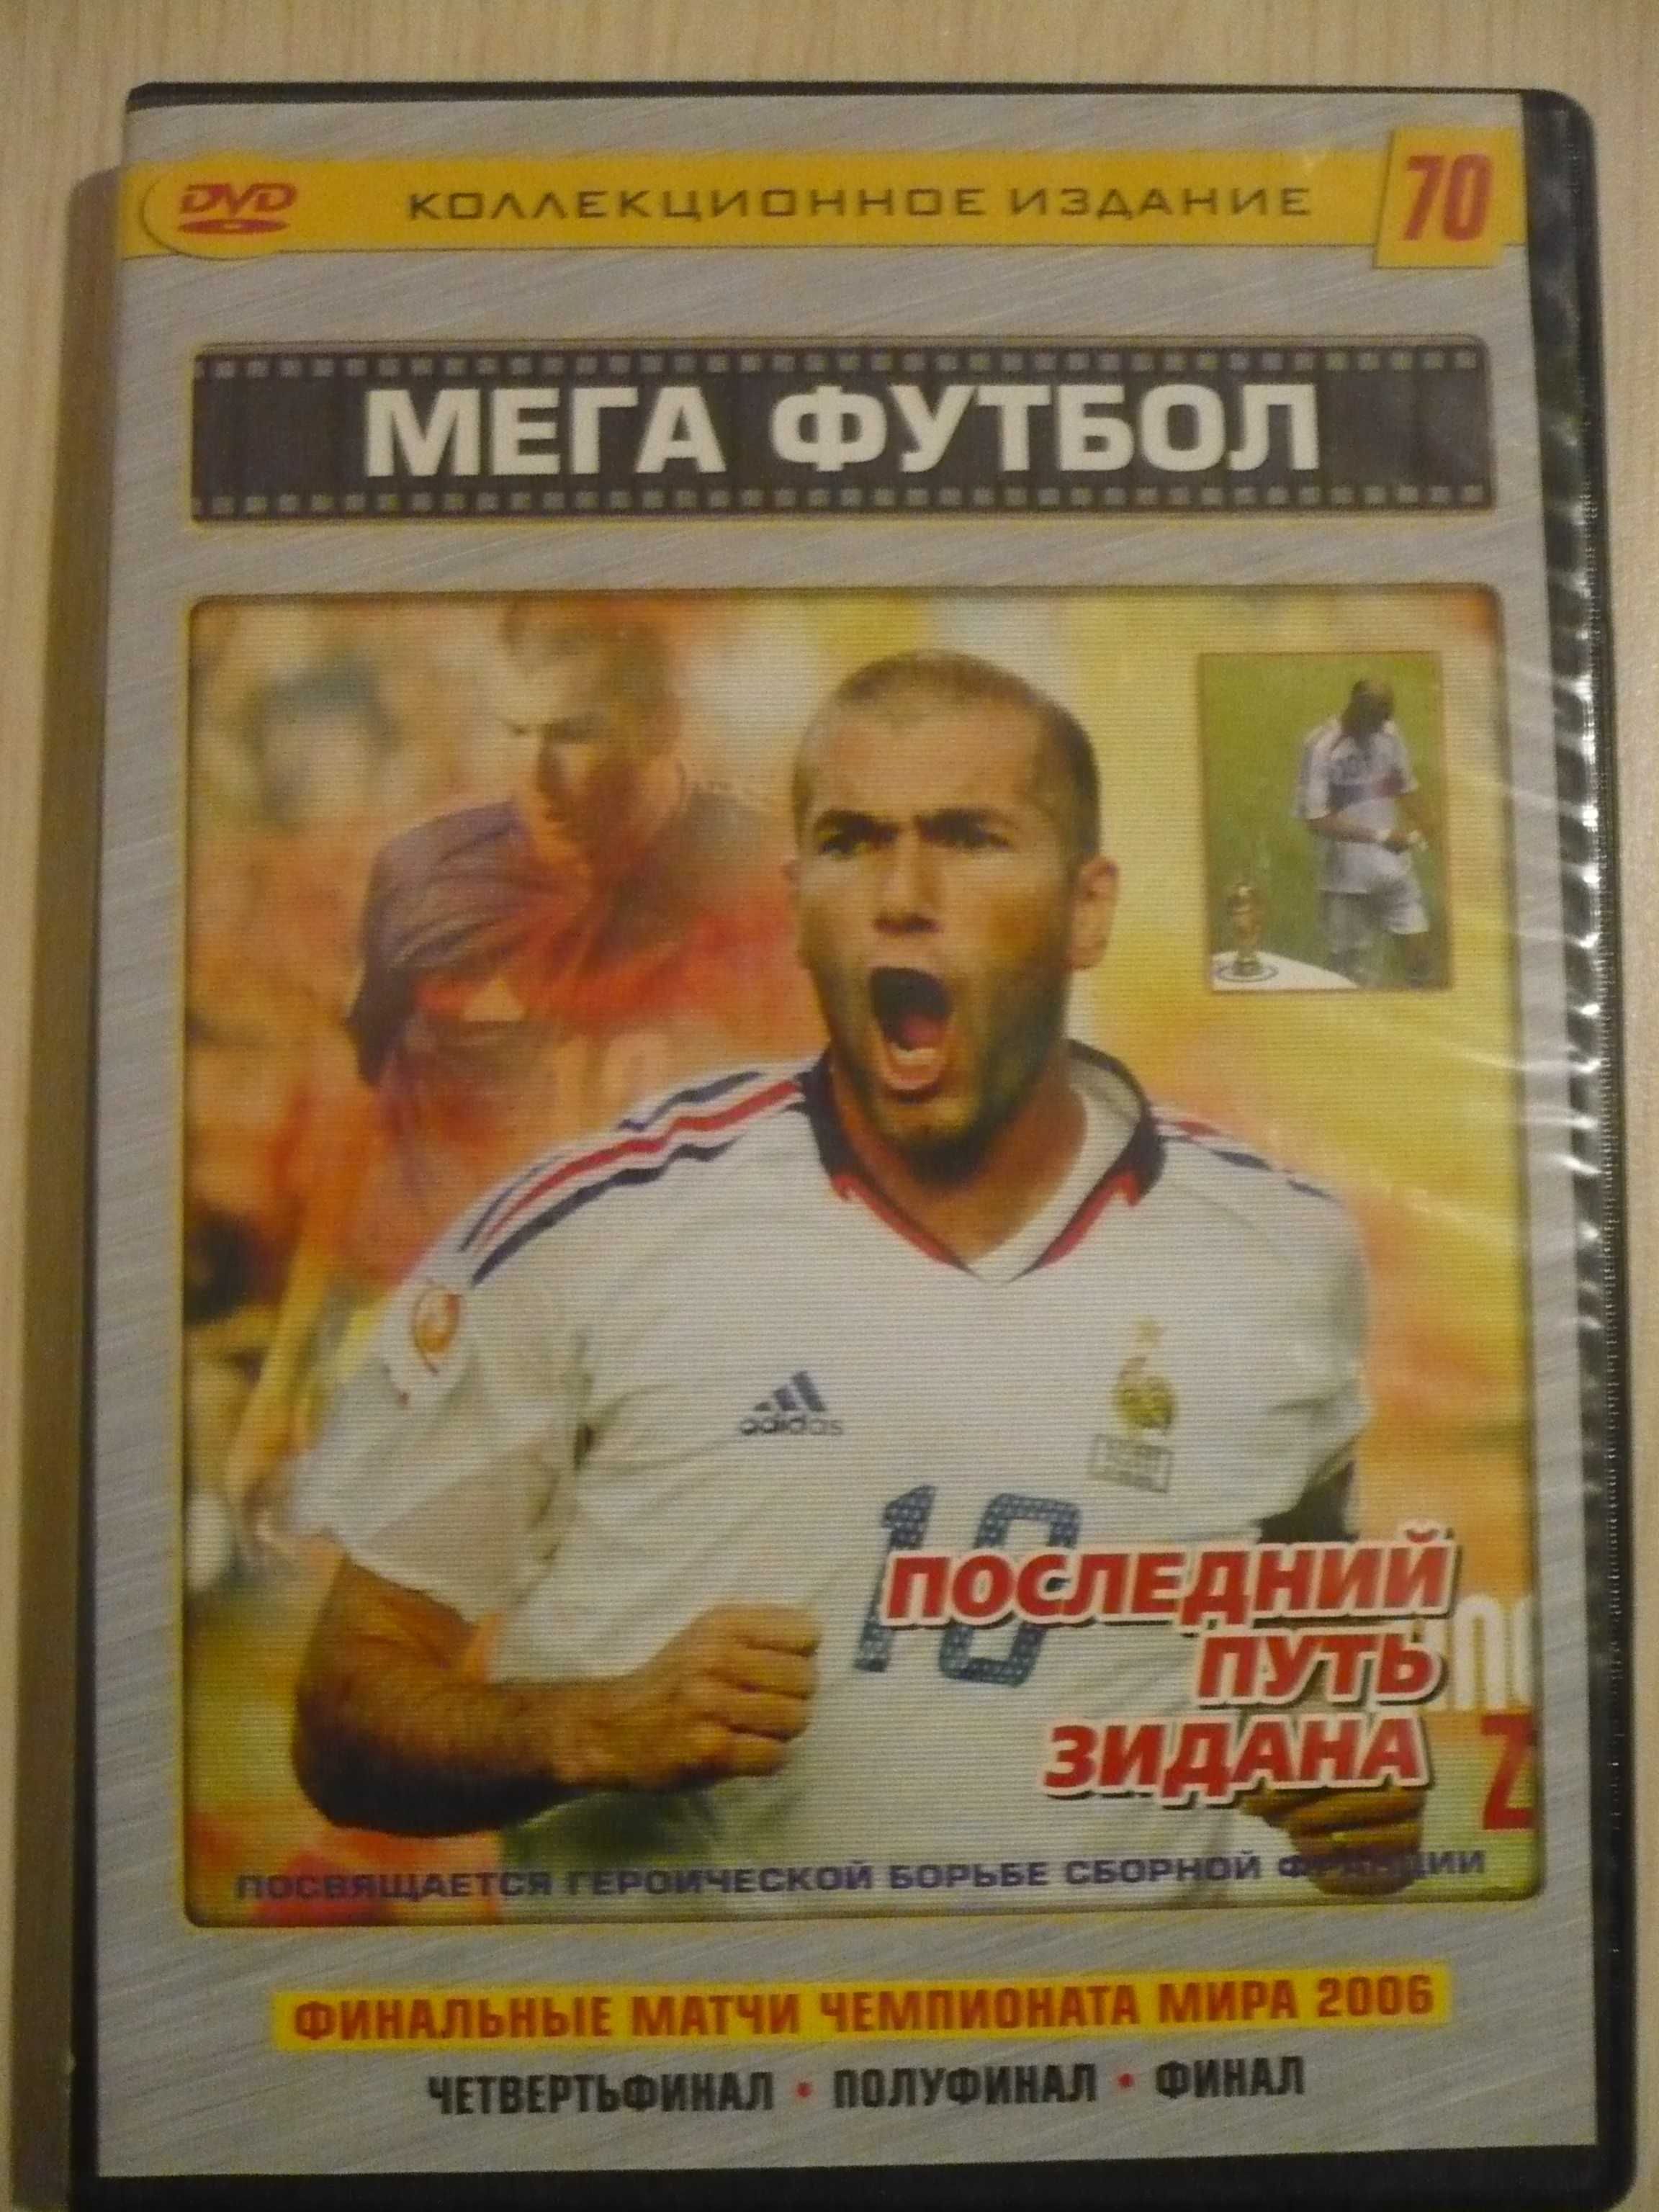 DVD-диск с Финальными матчами чемпионата мира по футболу 2006